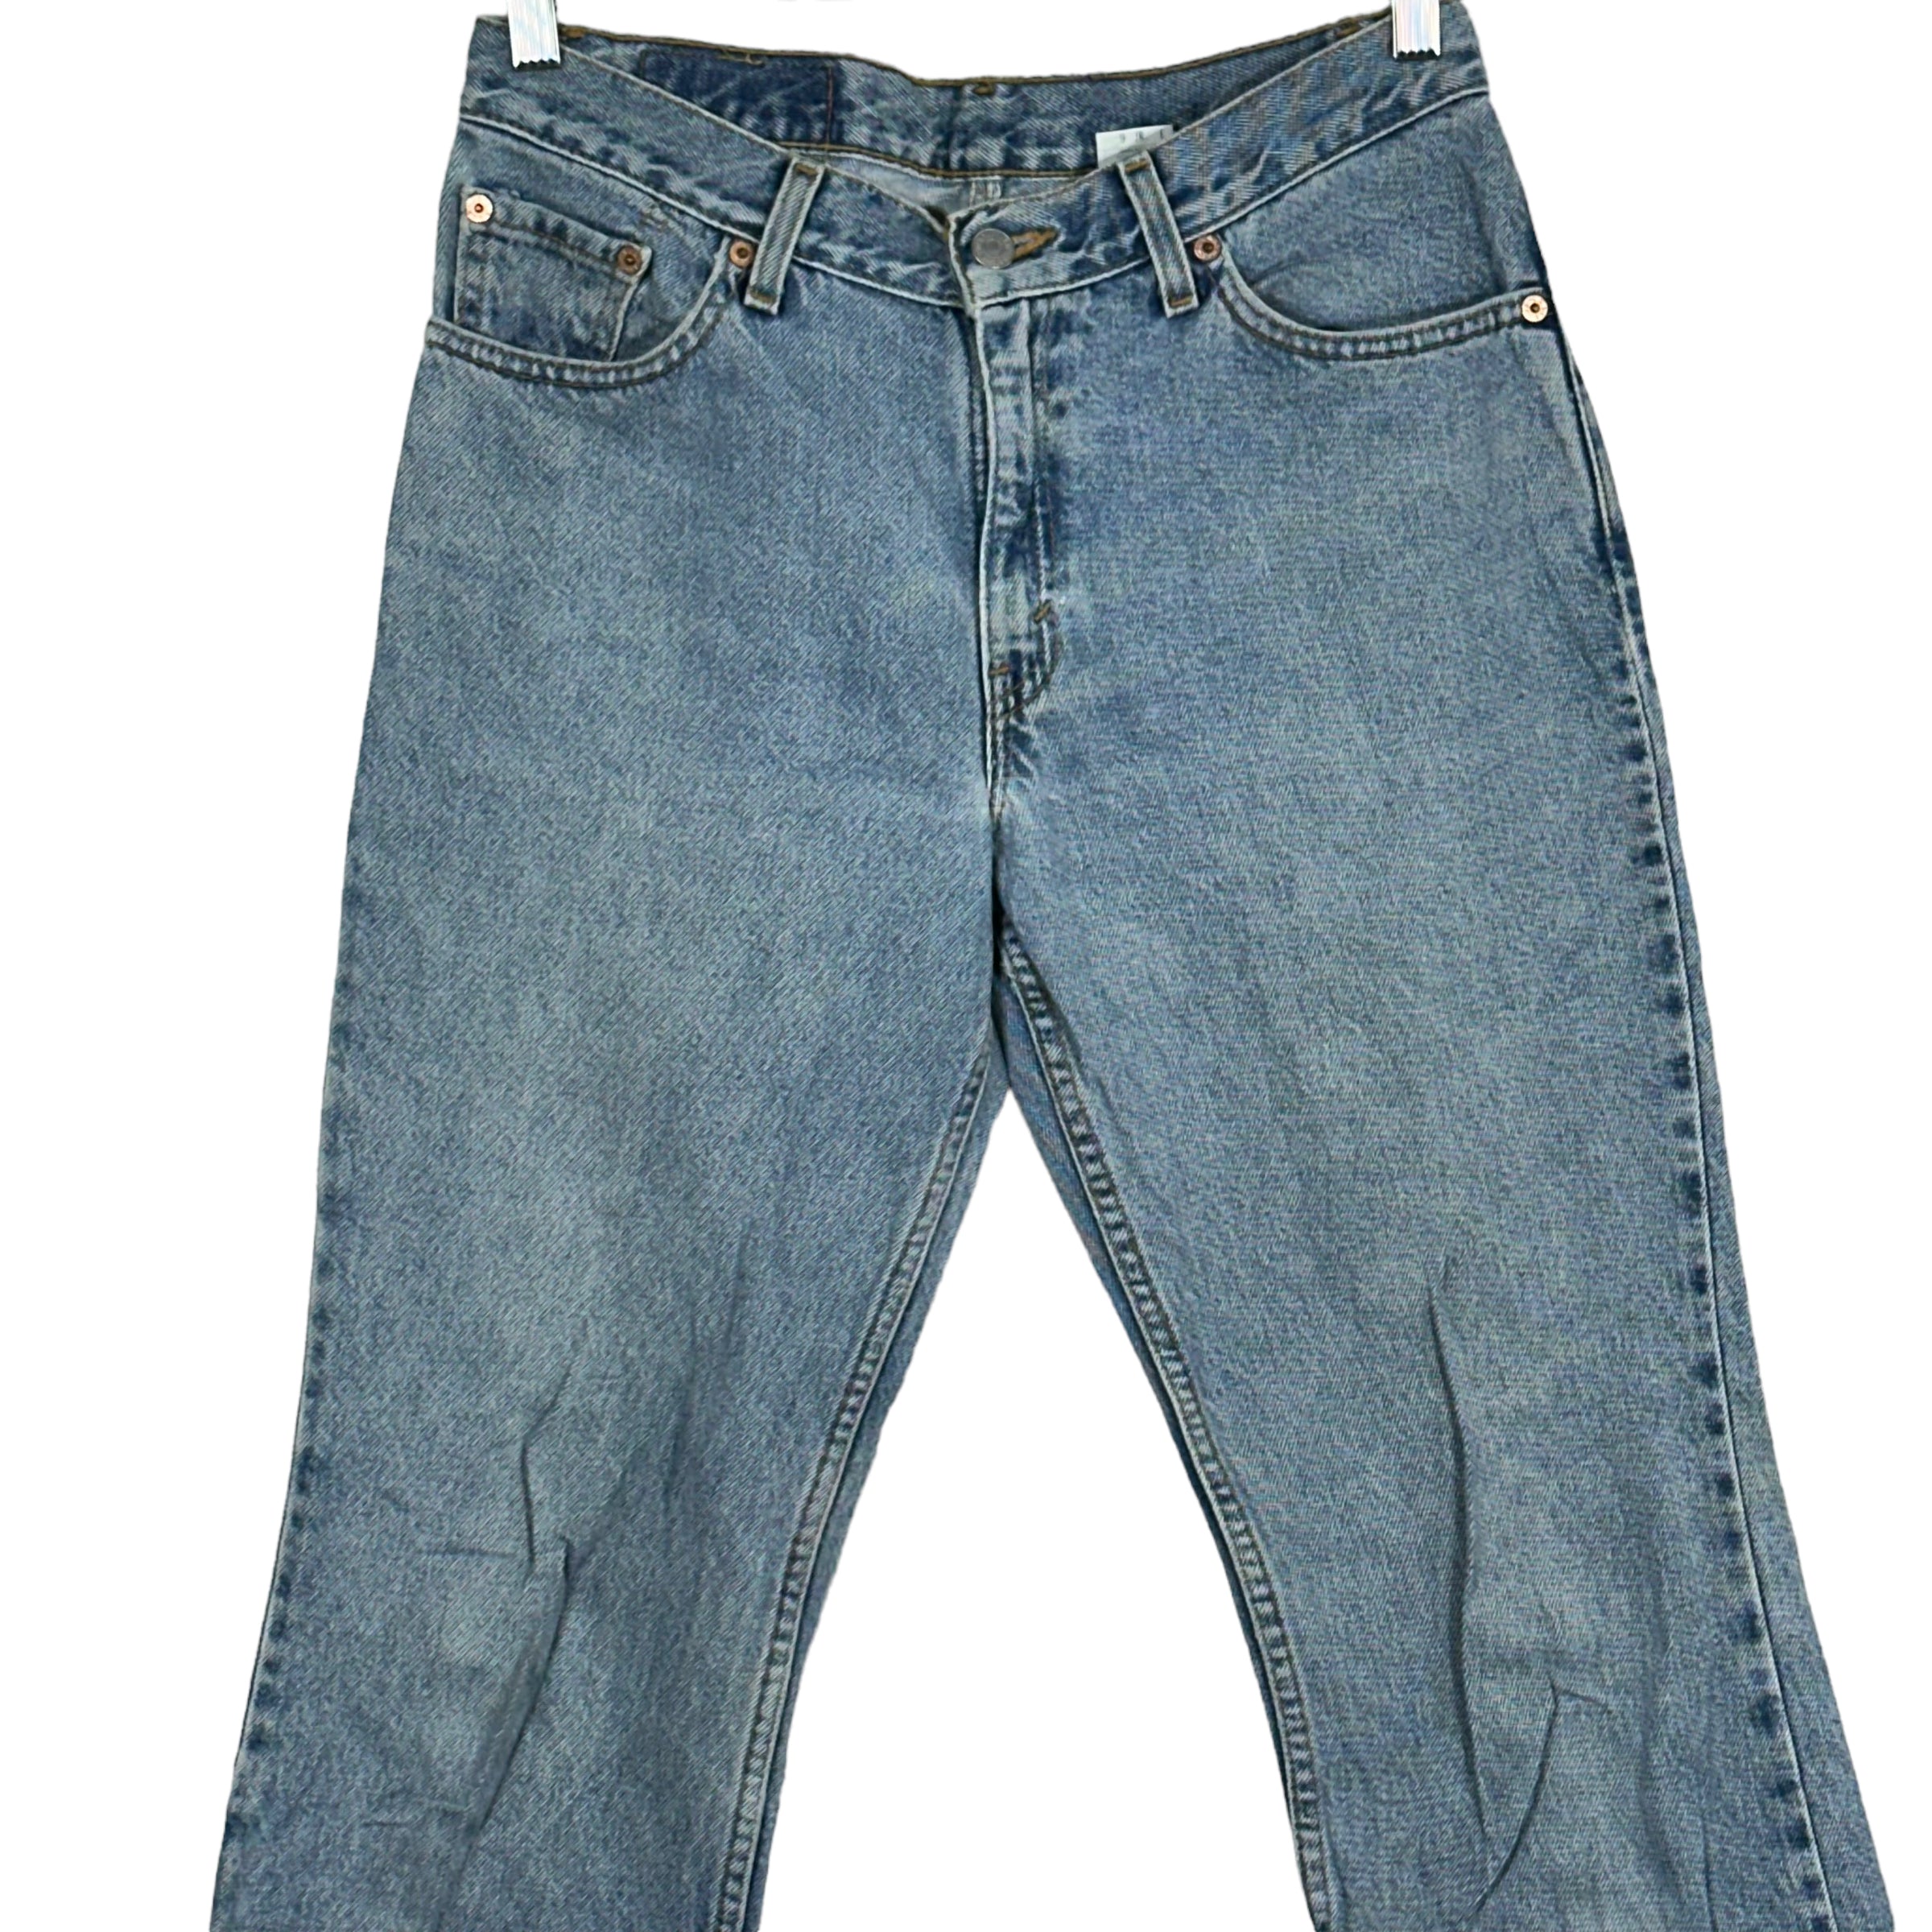 Vintage Levi's 517 Denim Jeans 90s